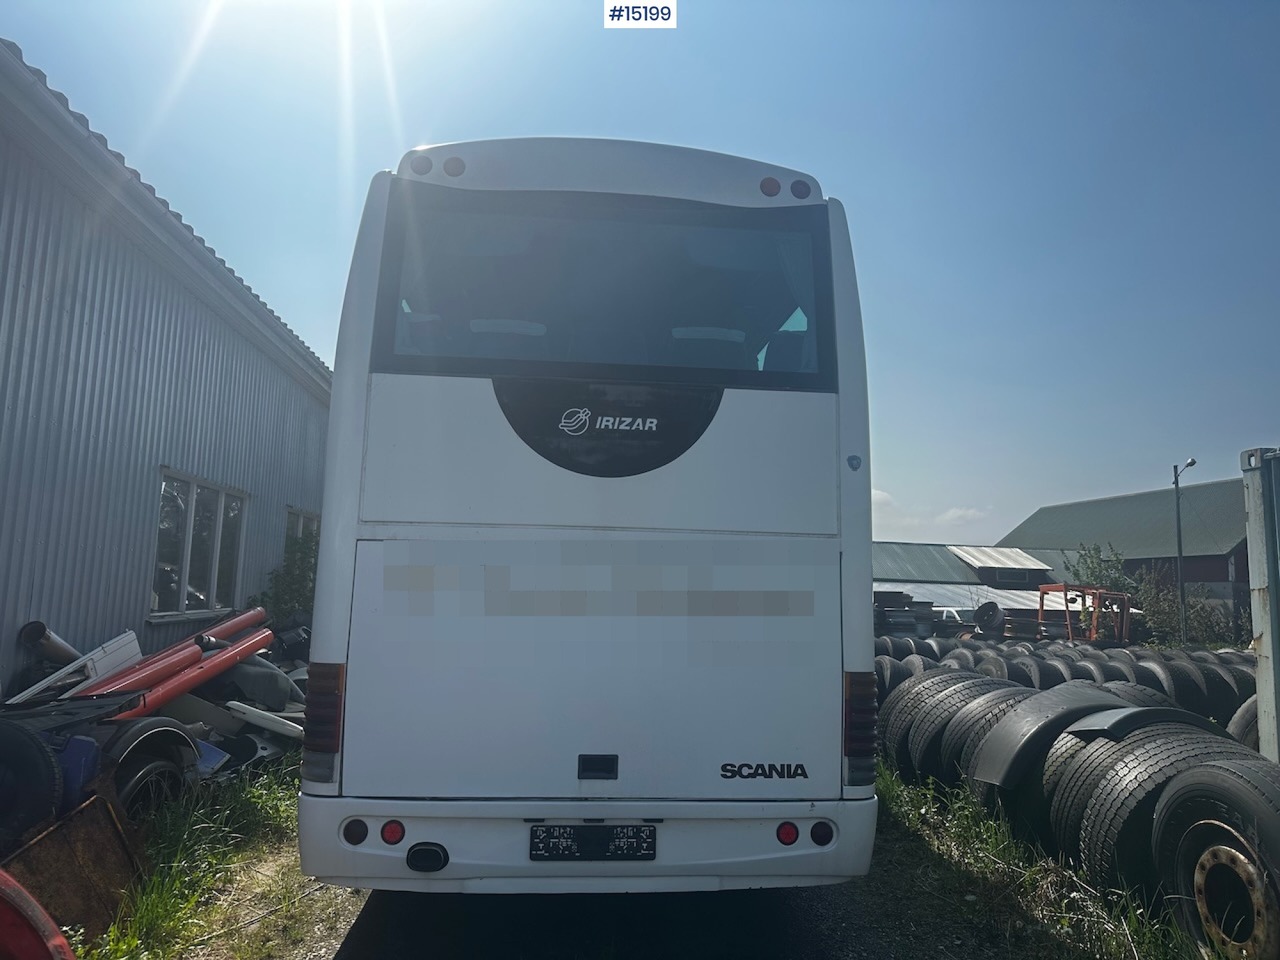 Turystyczny autobus Scania Irizar: zdjęcie 4